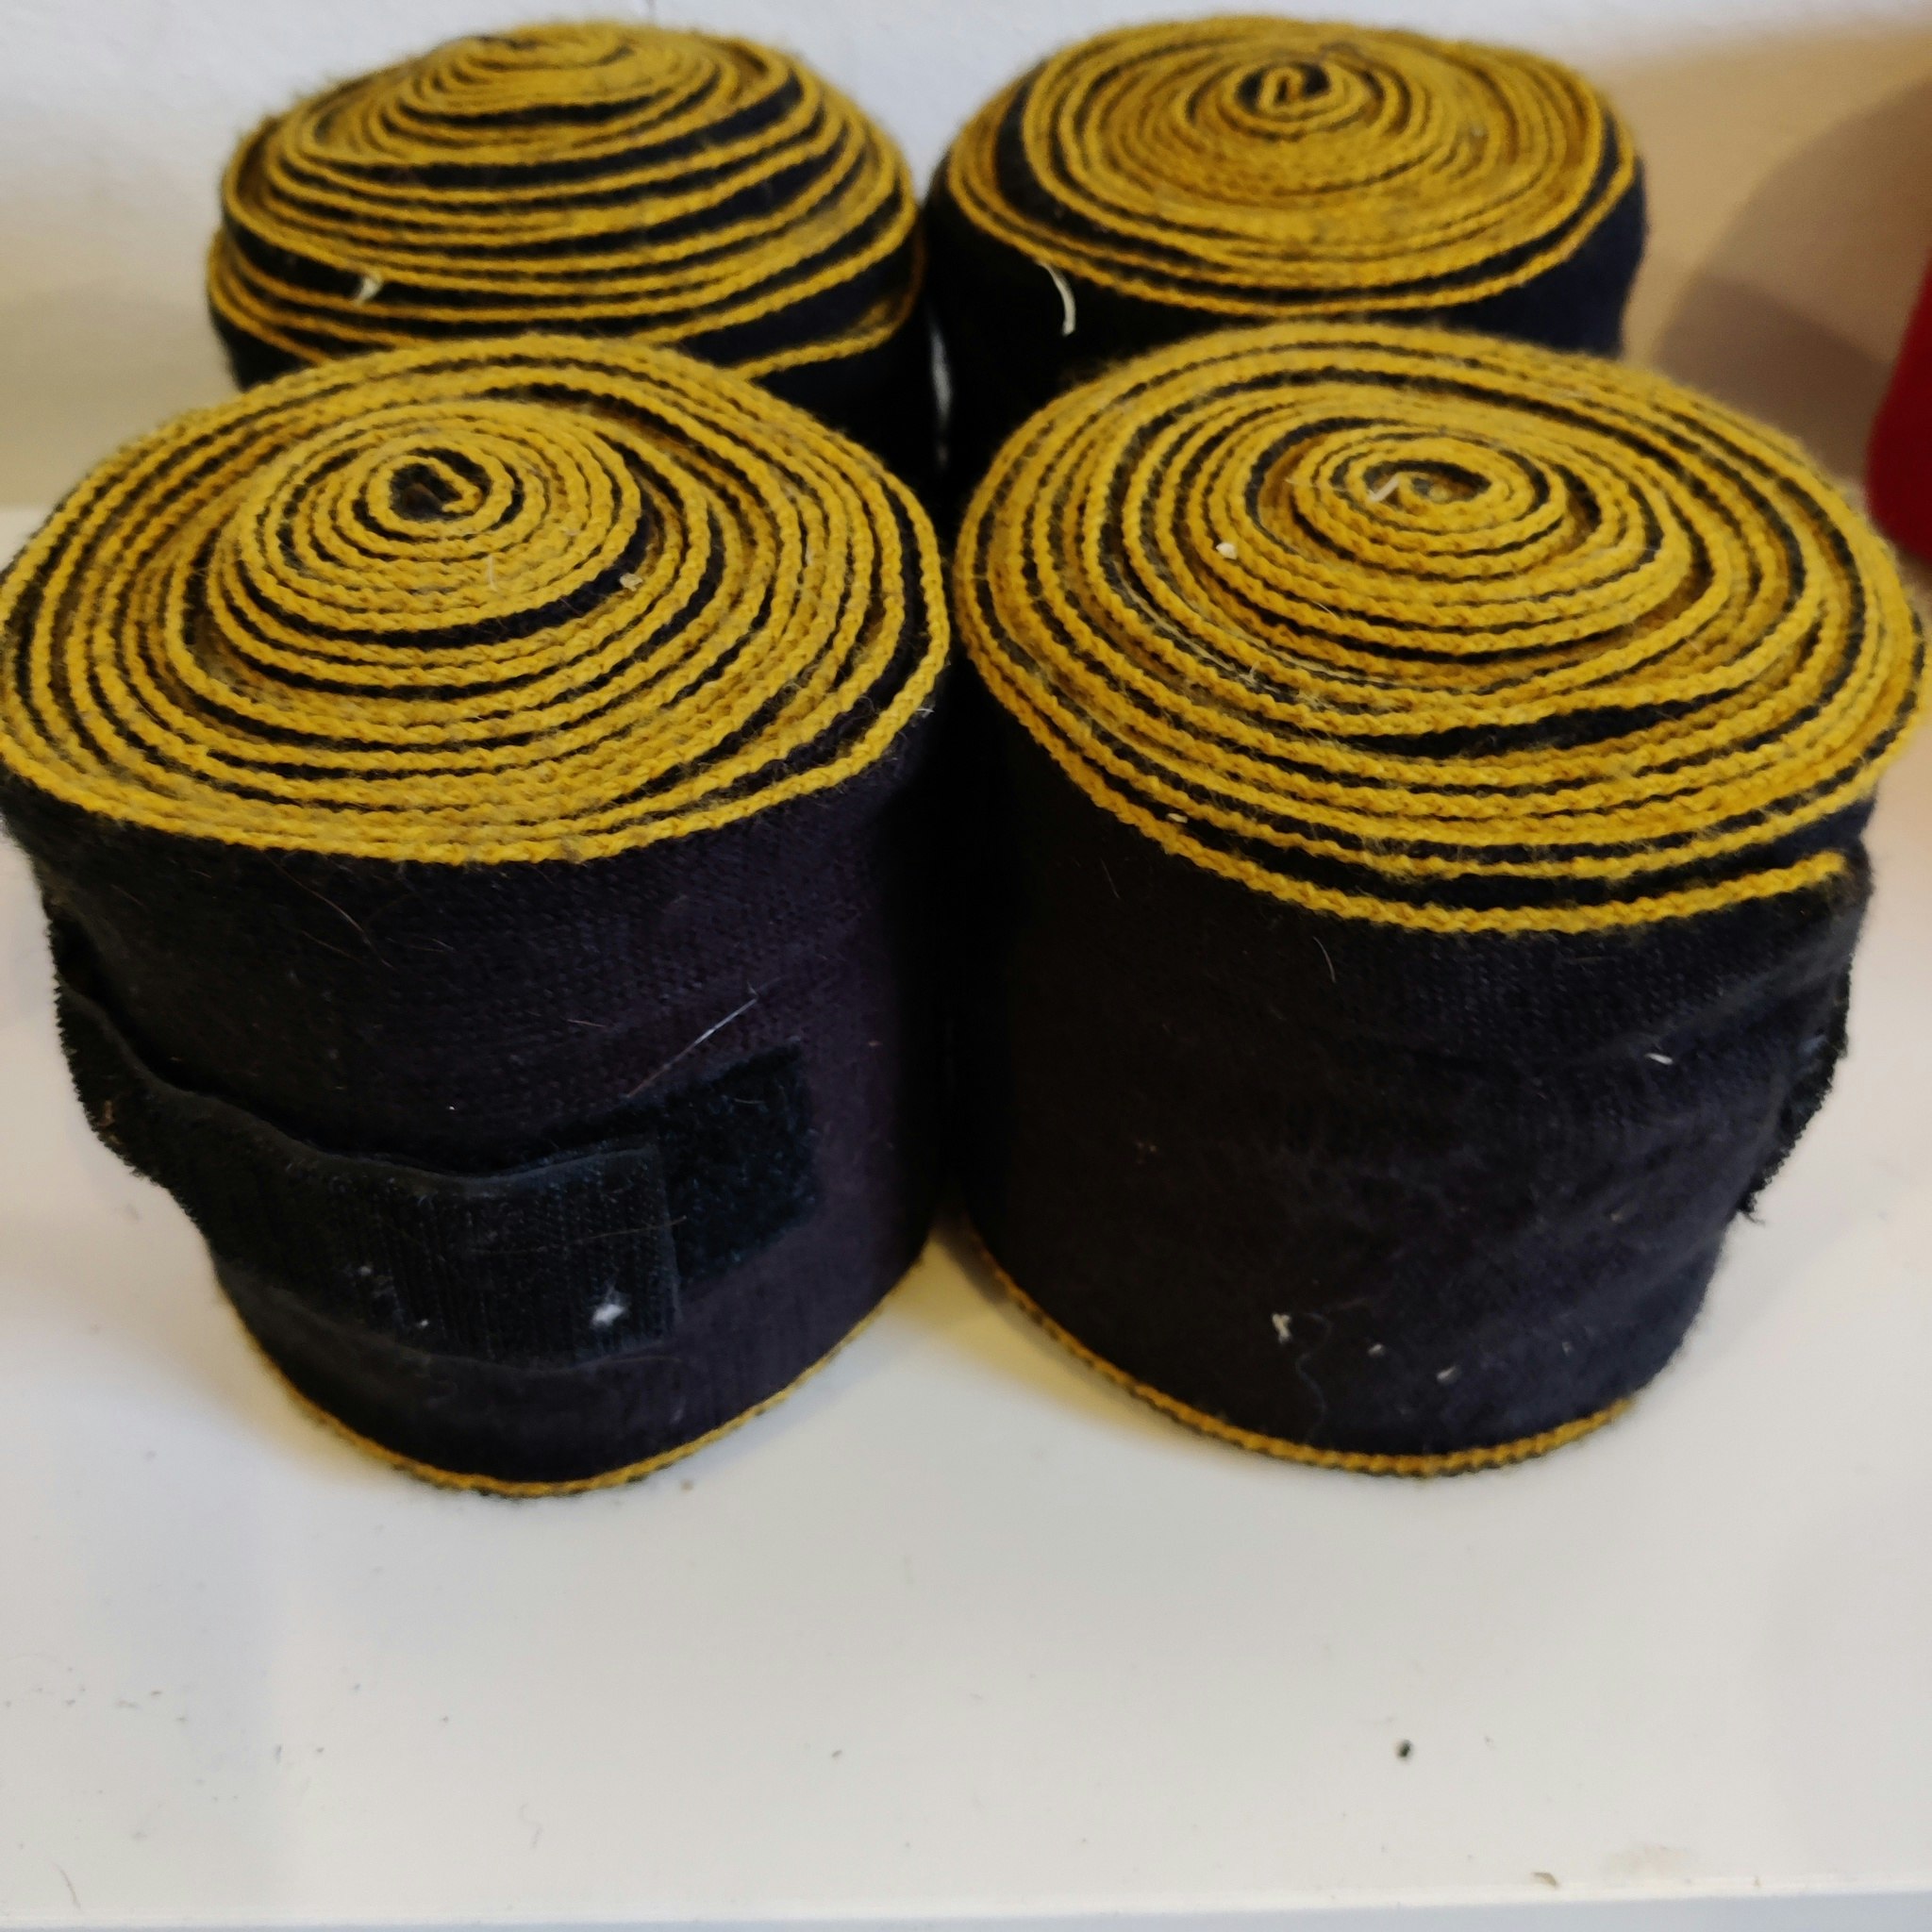 4 svart/gula akryllindor vändbara